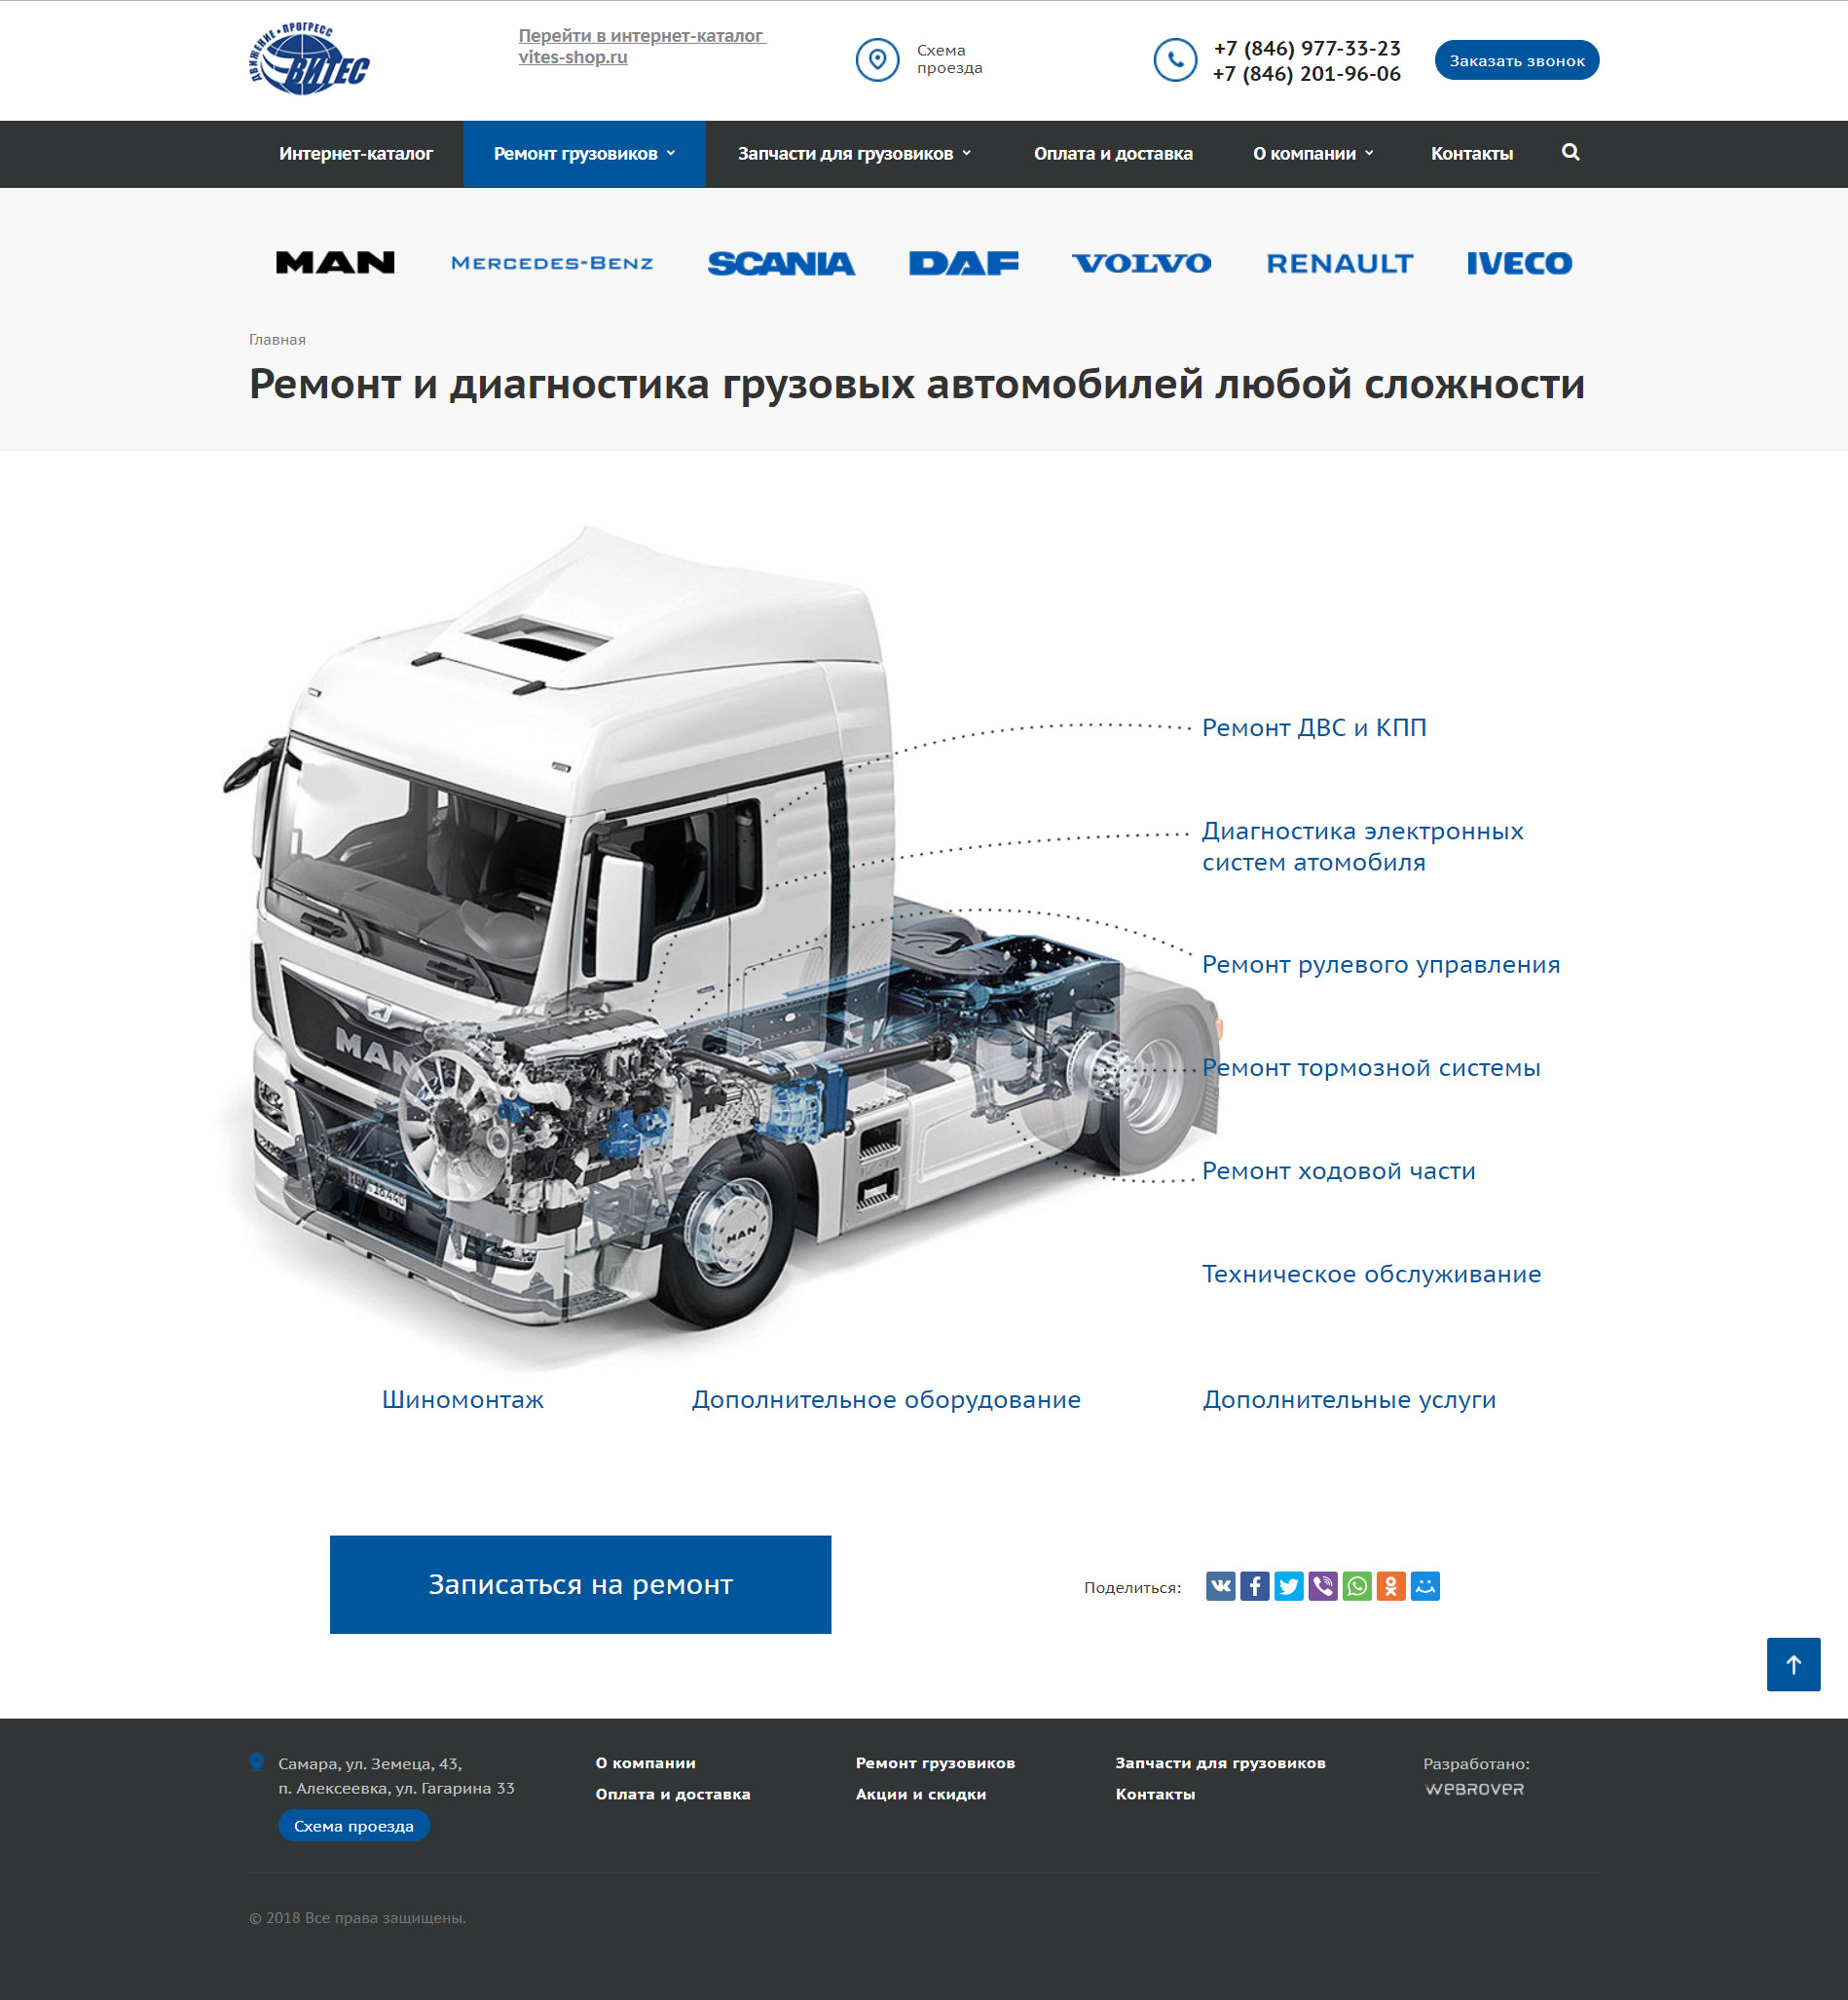 витес - сервис по ремонту грузовых автомобилей